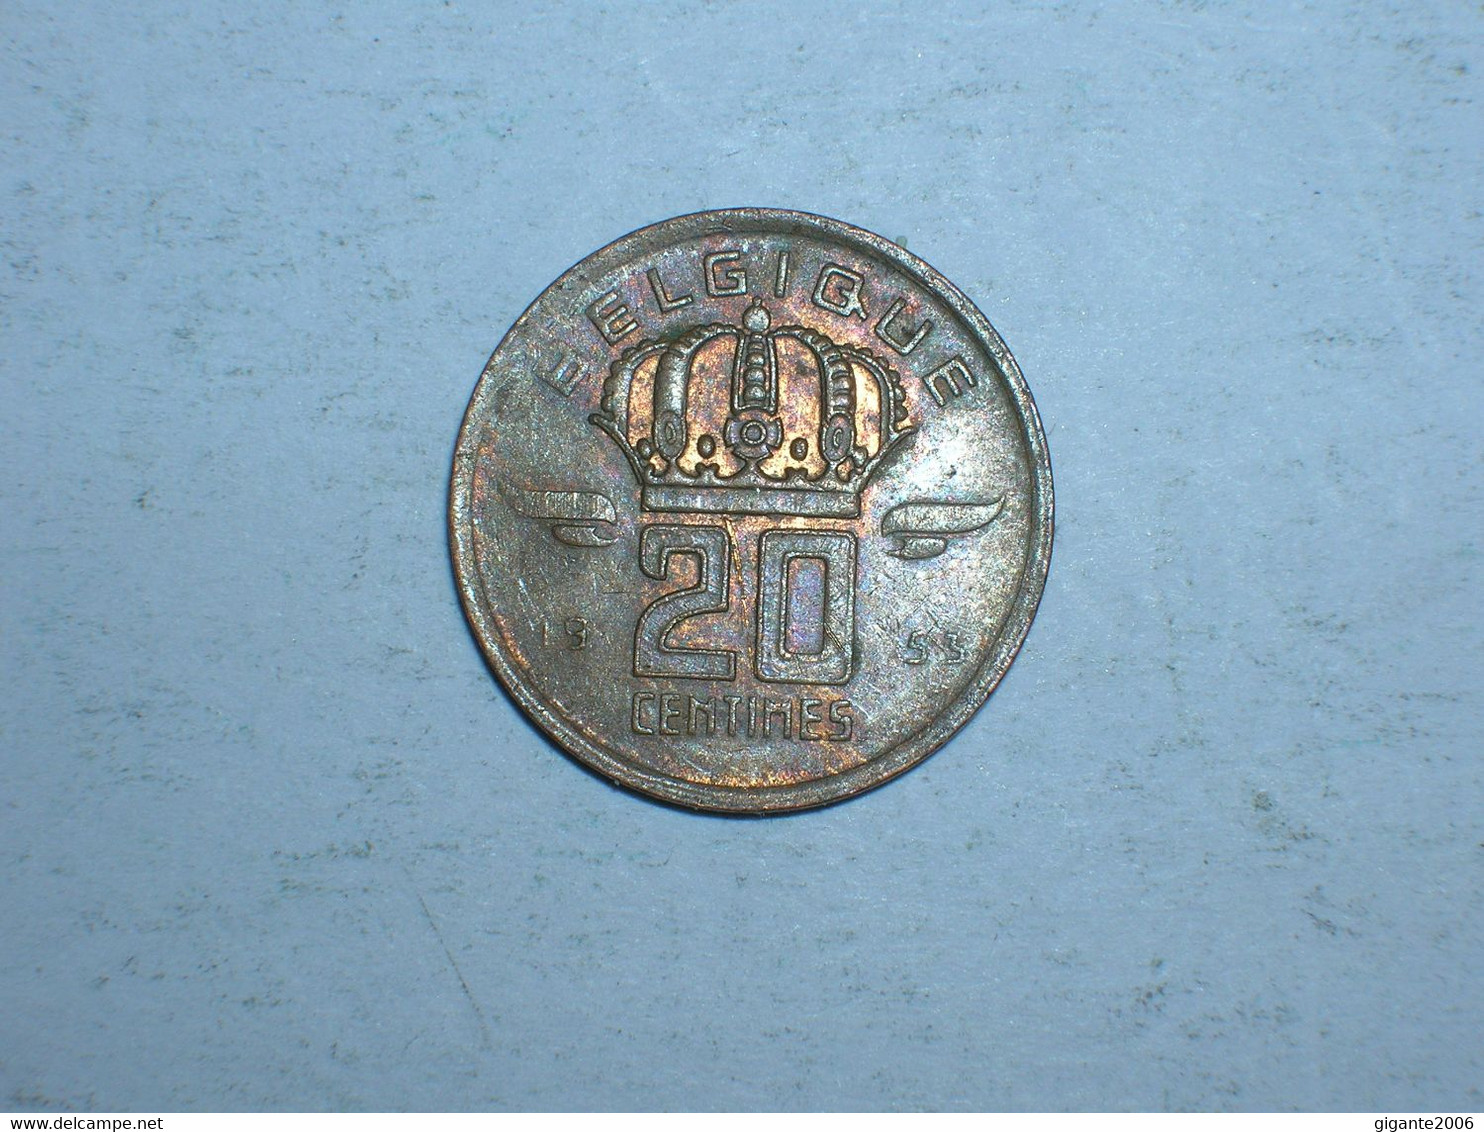 BELGICA 20 CENTIMOS 1953 FR (9712) - 20 Centimes